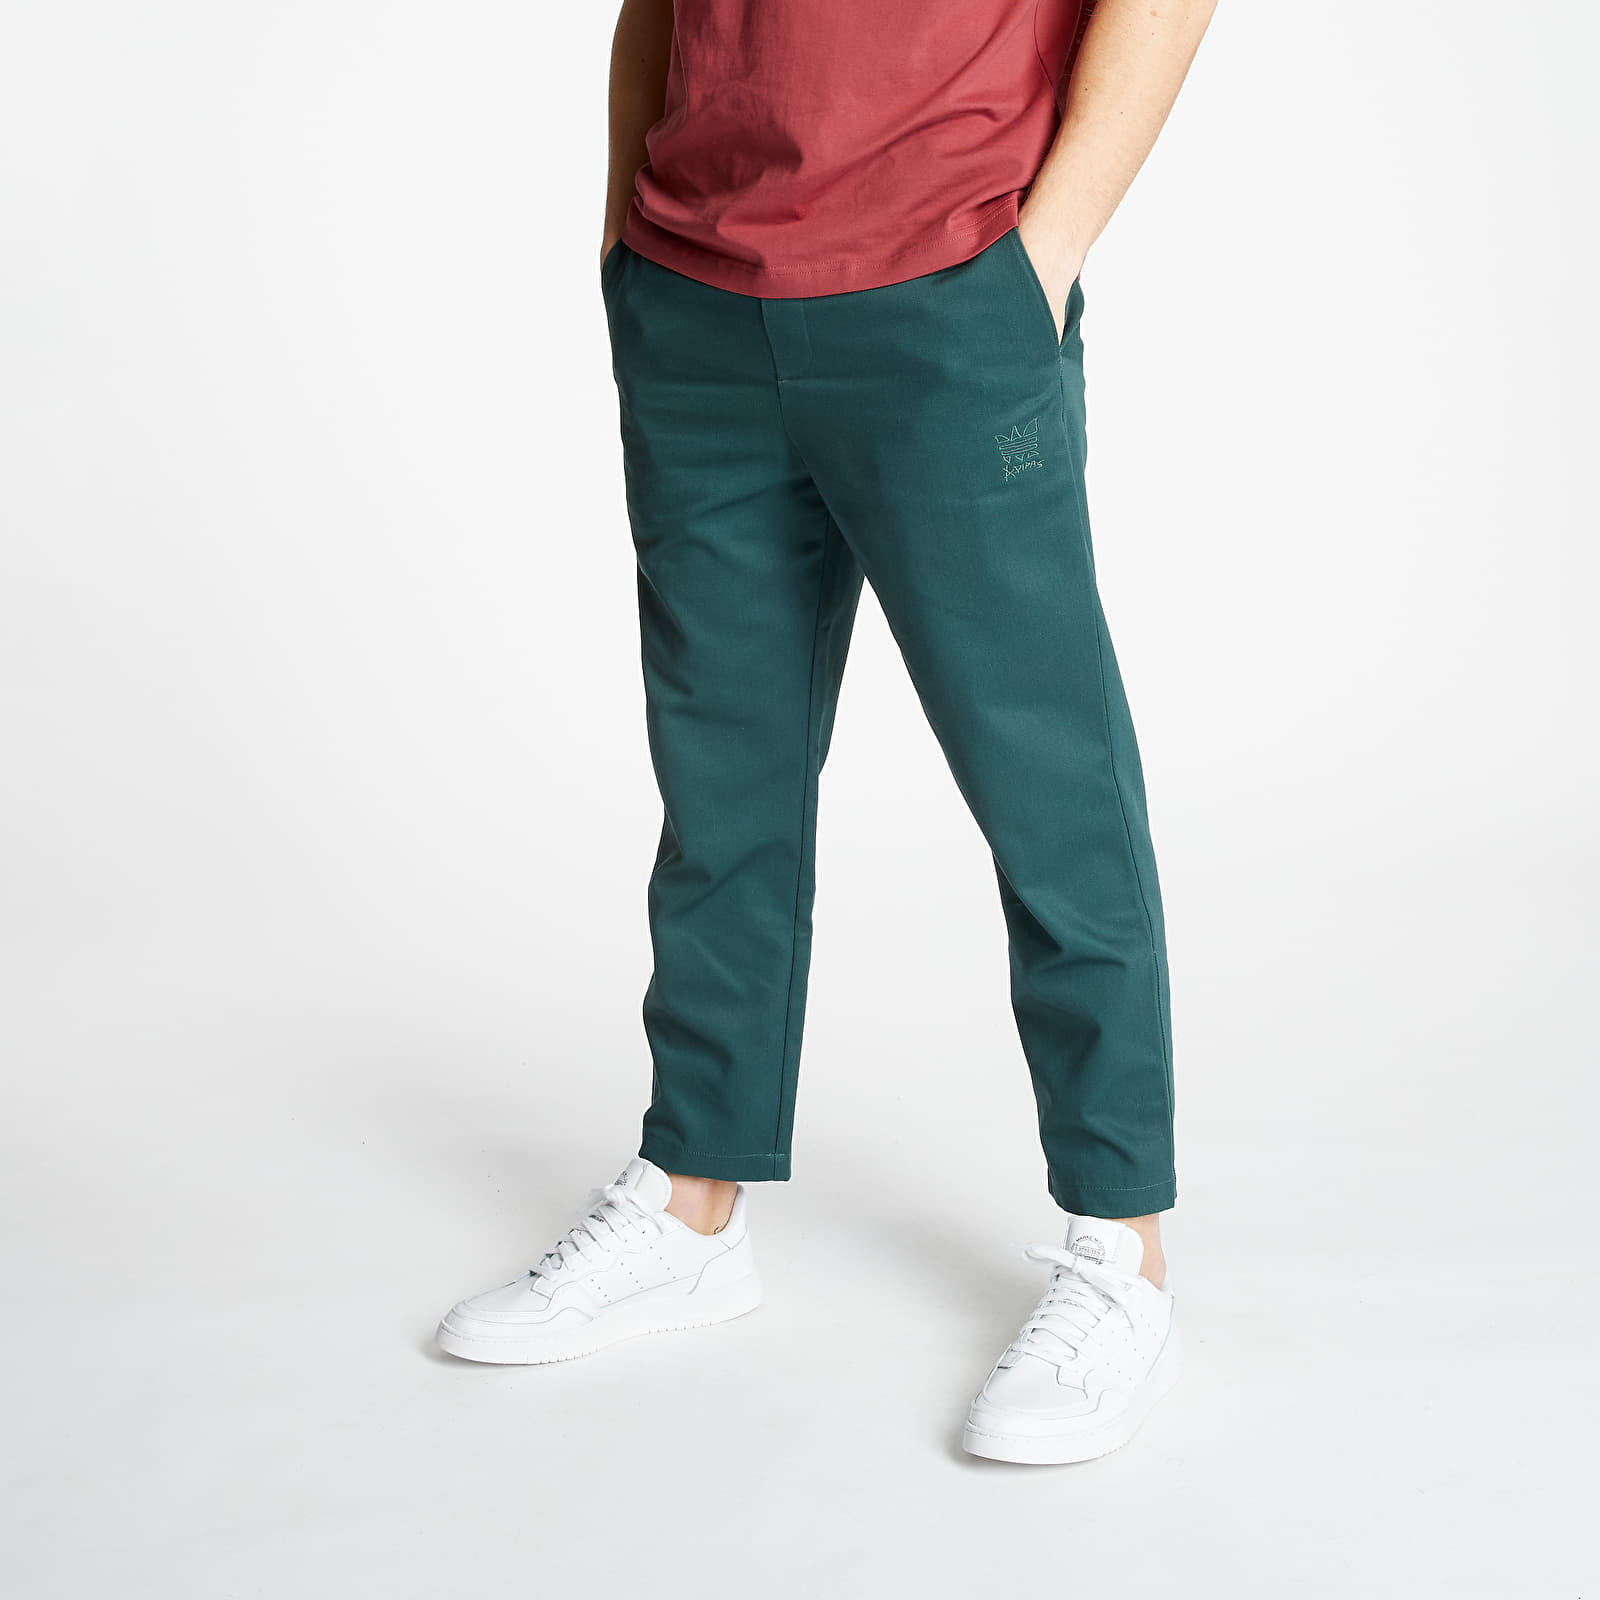 Pantalons adidas x Jonah Hill Chino Pants Mineral Green